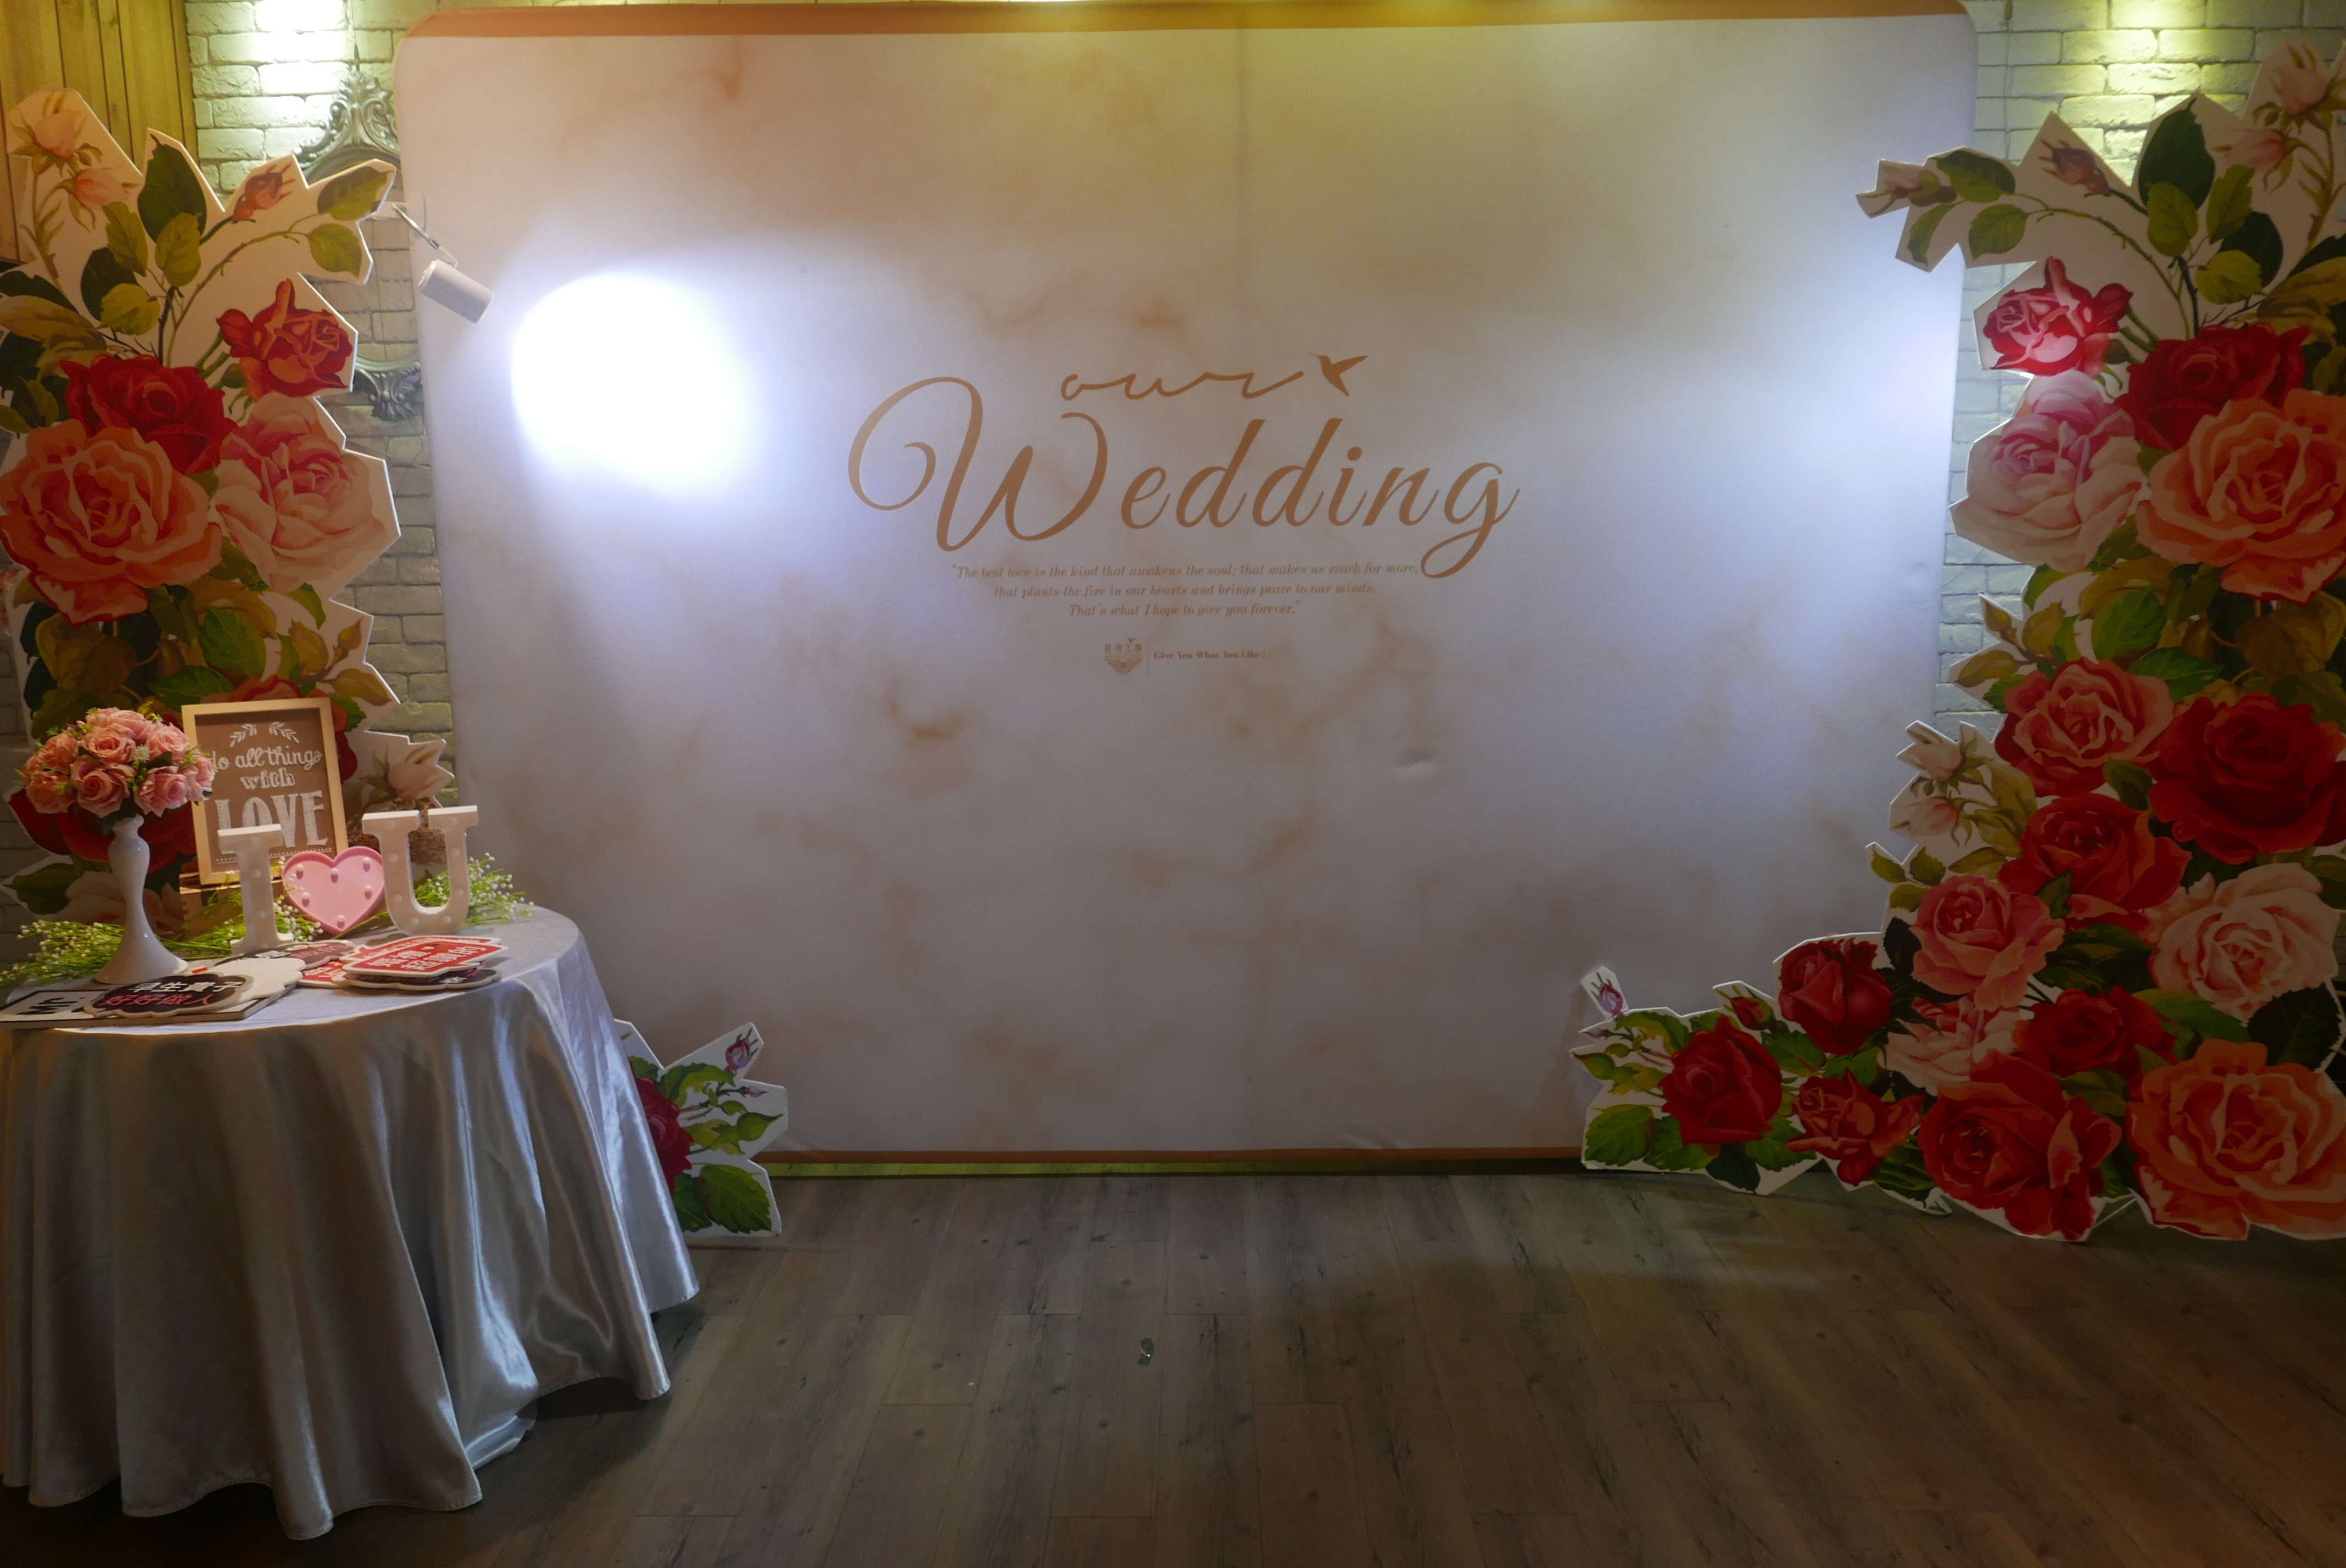 新莊婚宴餐廳 終身大事婚禮工坊－新莊館-結婚經驗分享